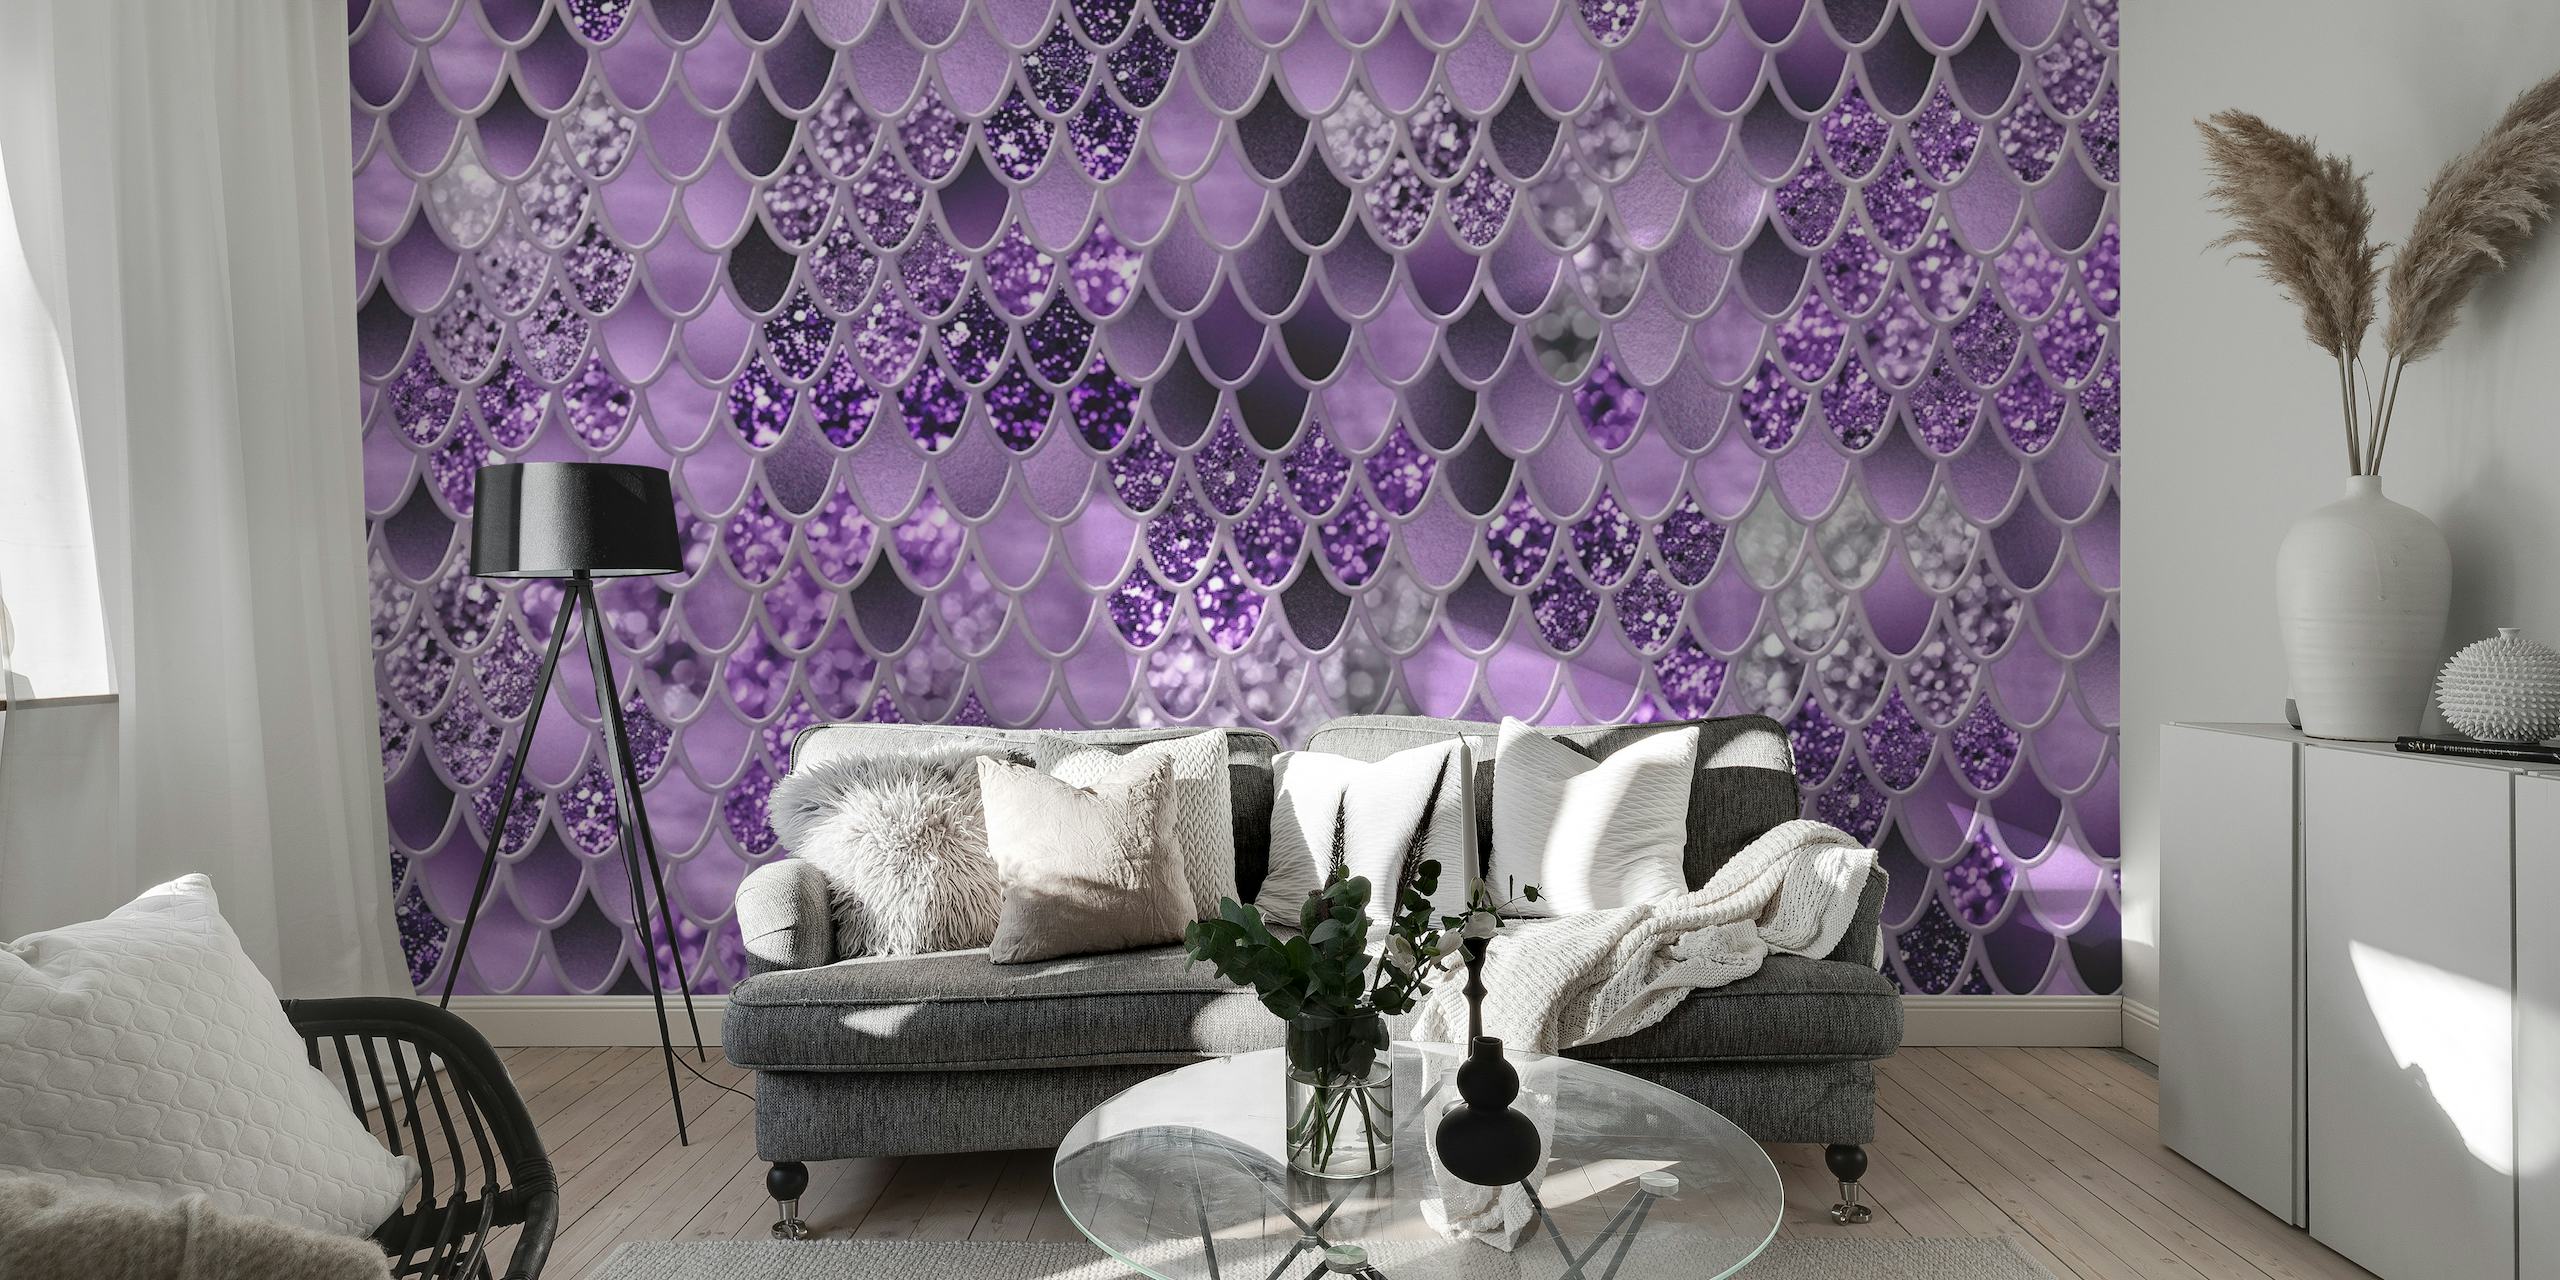 Motif écailles de sirène violette pour décoration murale avec des détails étincelants.